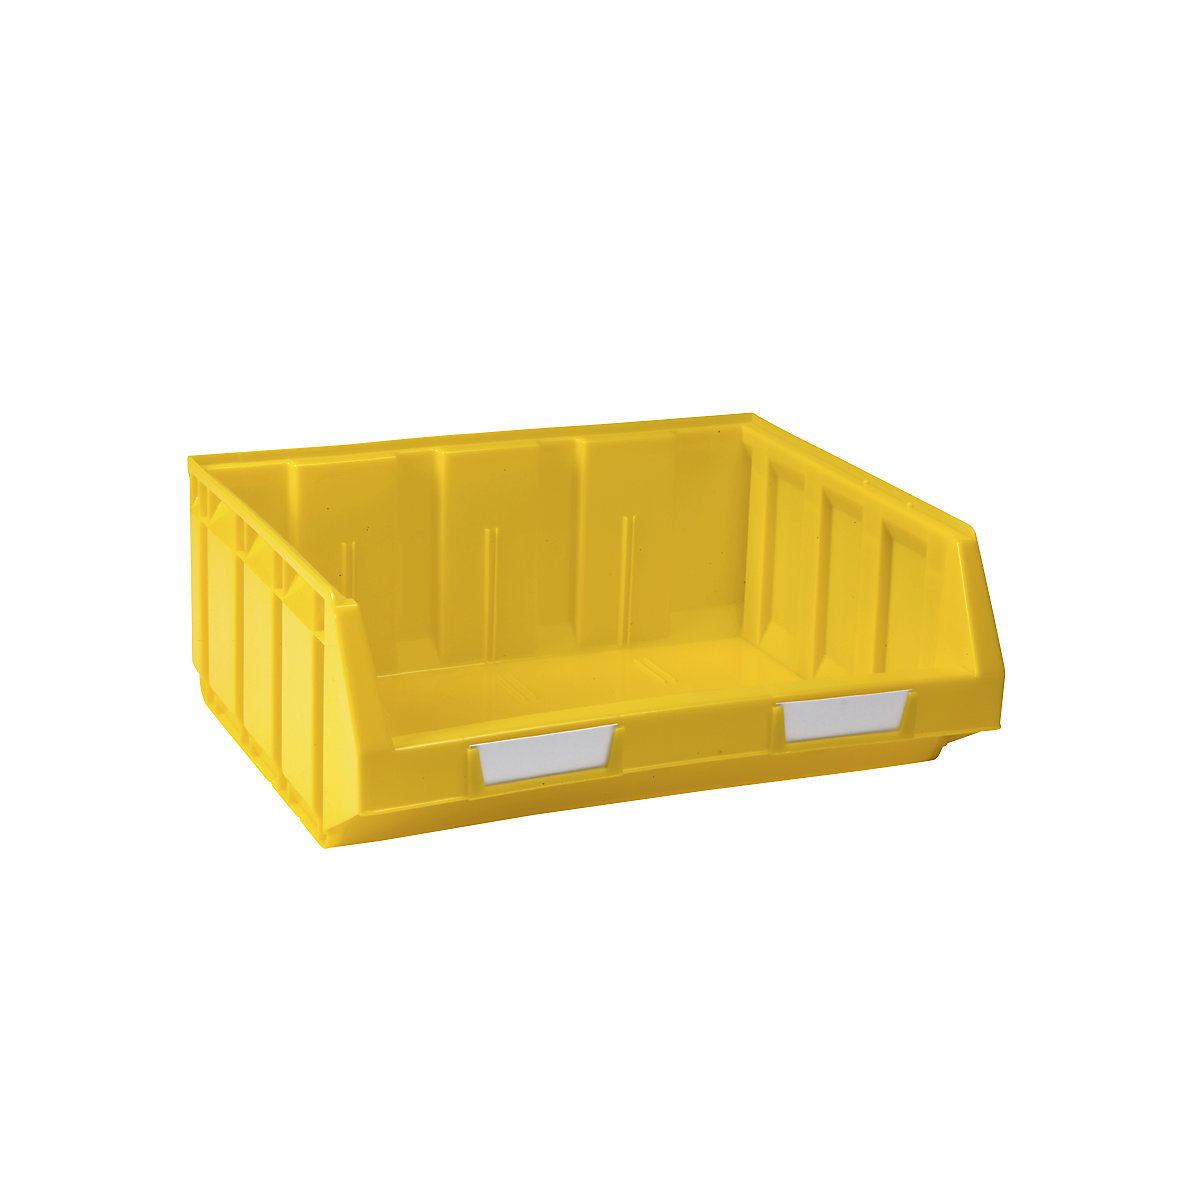 Prepravka s viditeľným obsahom z polyetylénu, d x š x v 345 x 410 x 164 mm, žltá, OJ 8 ks-10